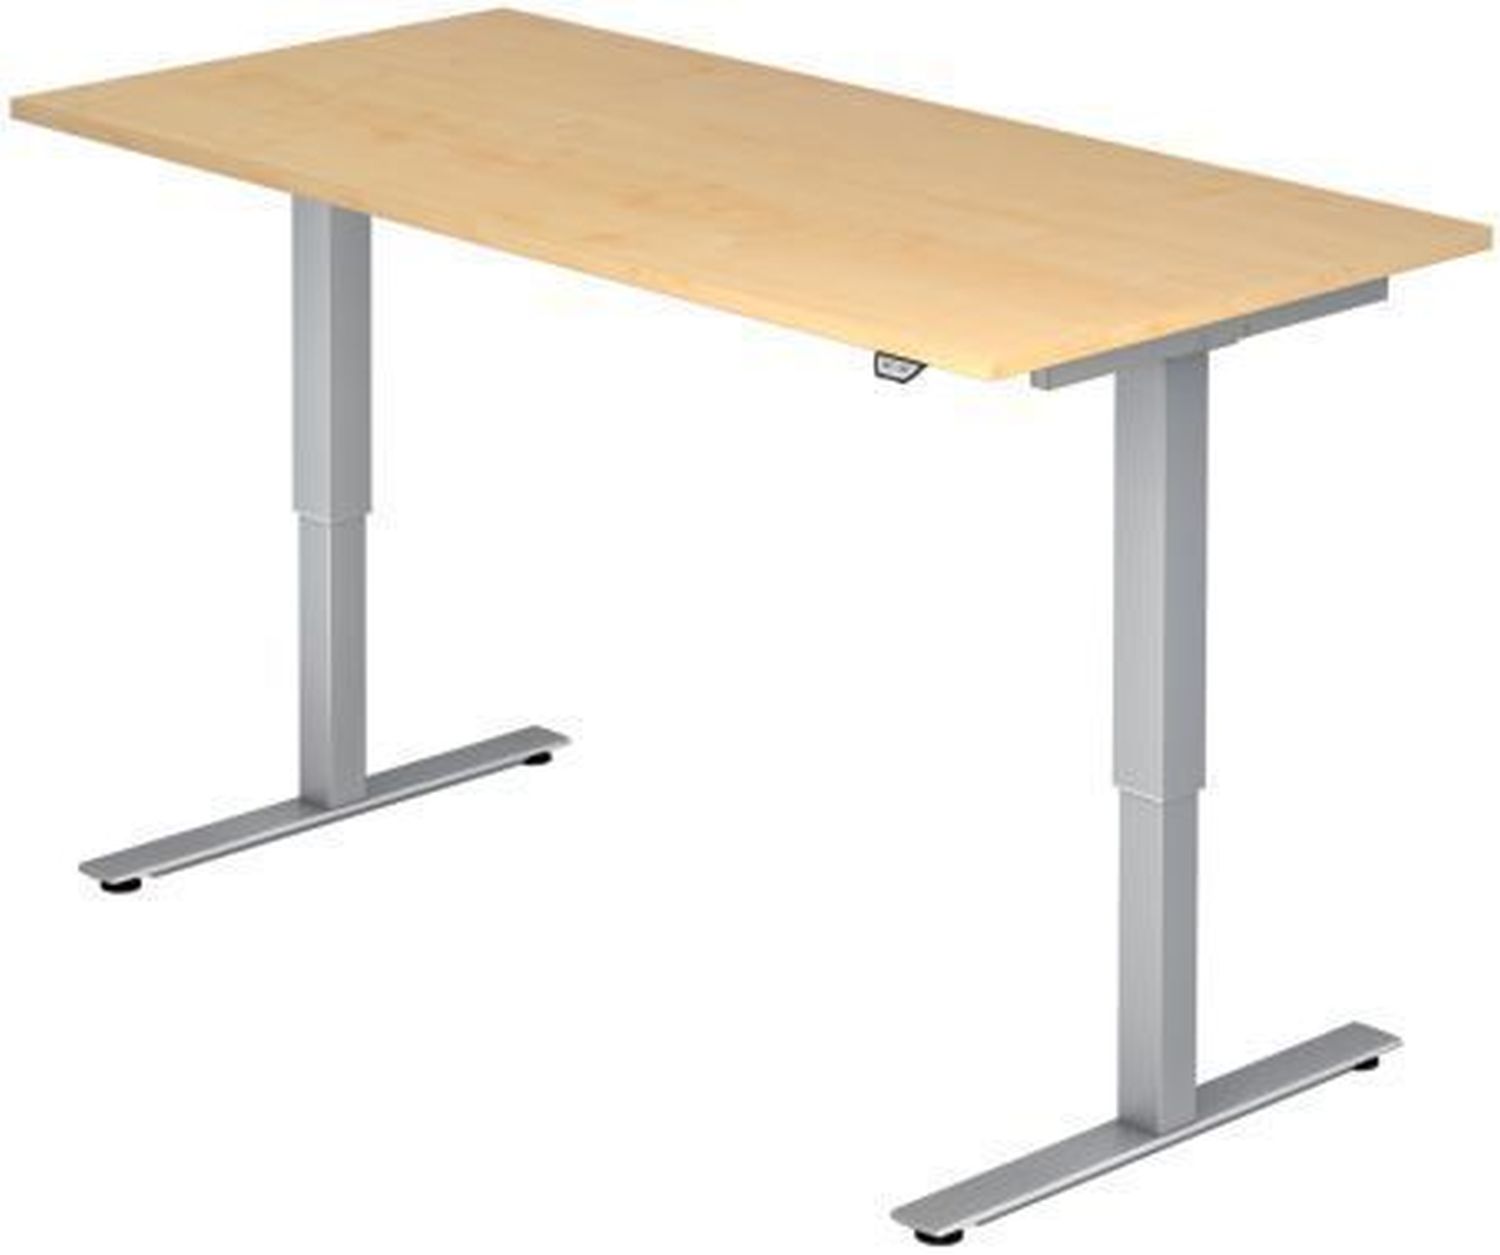 Sitz-Steh-Schreibtisch mit T-Fuß - 120 x 72-119 x 80 cm, elektr. höhenverstellbar, Ahorn